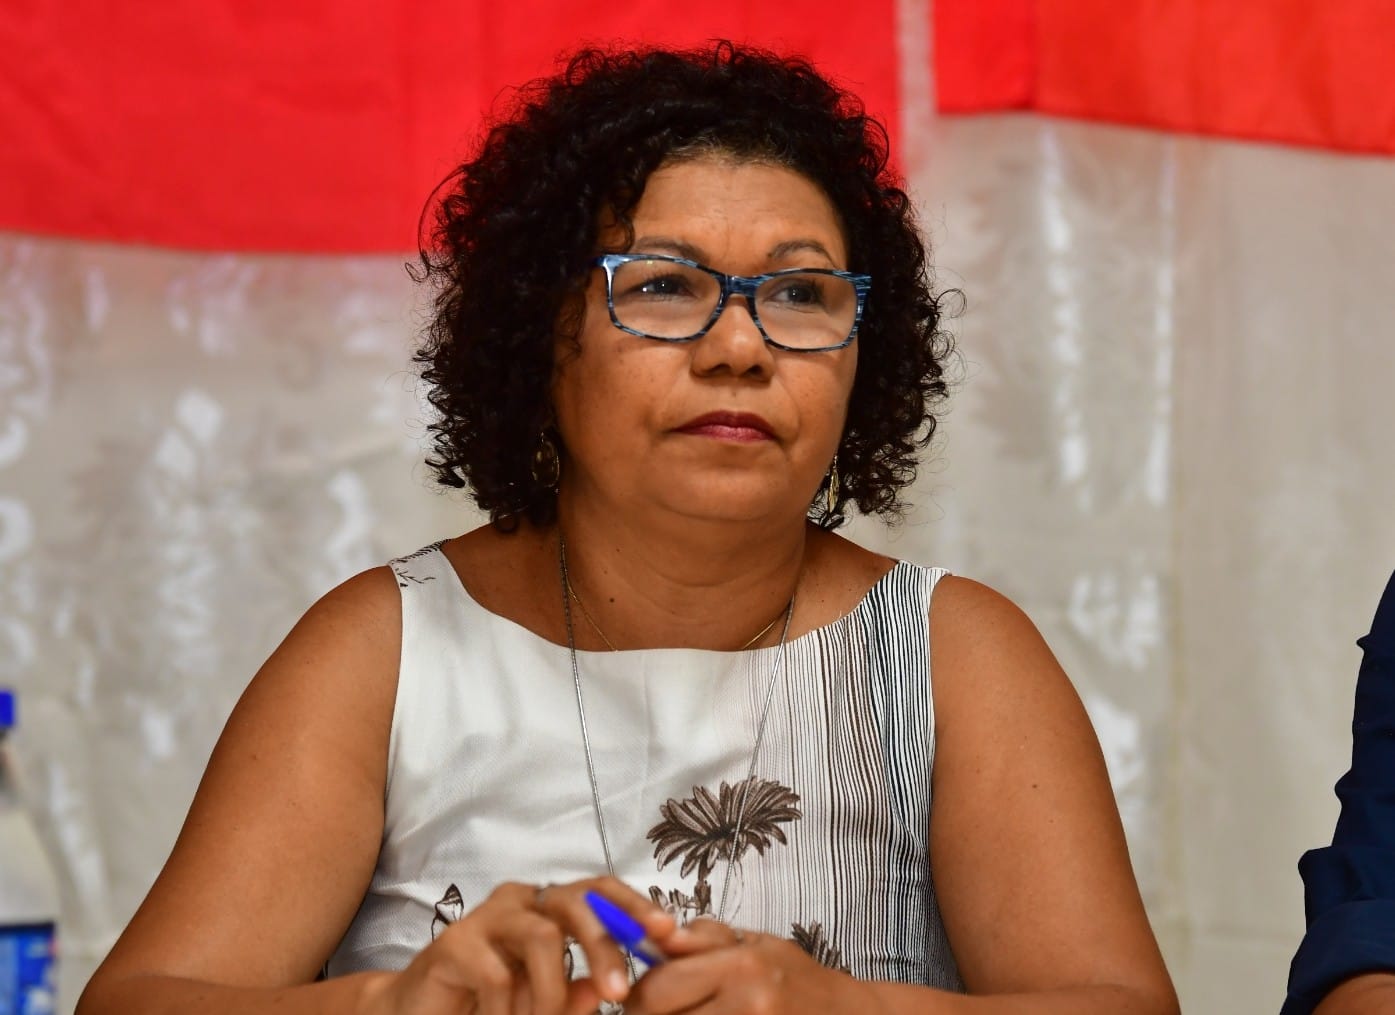 Partido Socialista dos Trabalhadores Unificado oficializou, neste domingo (31), o nome da operária sapateira; Raquel Tremembé será a vice na chapa